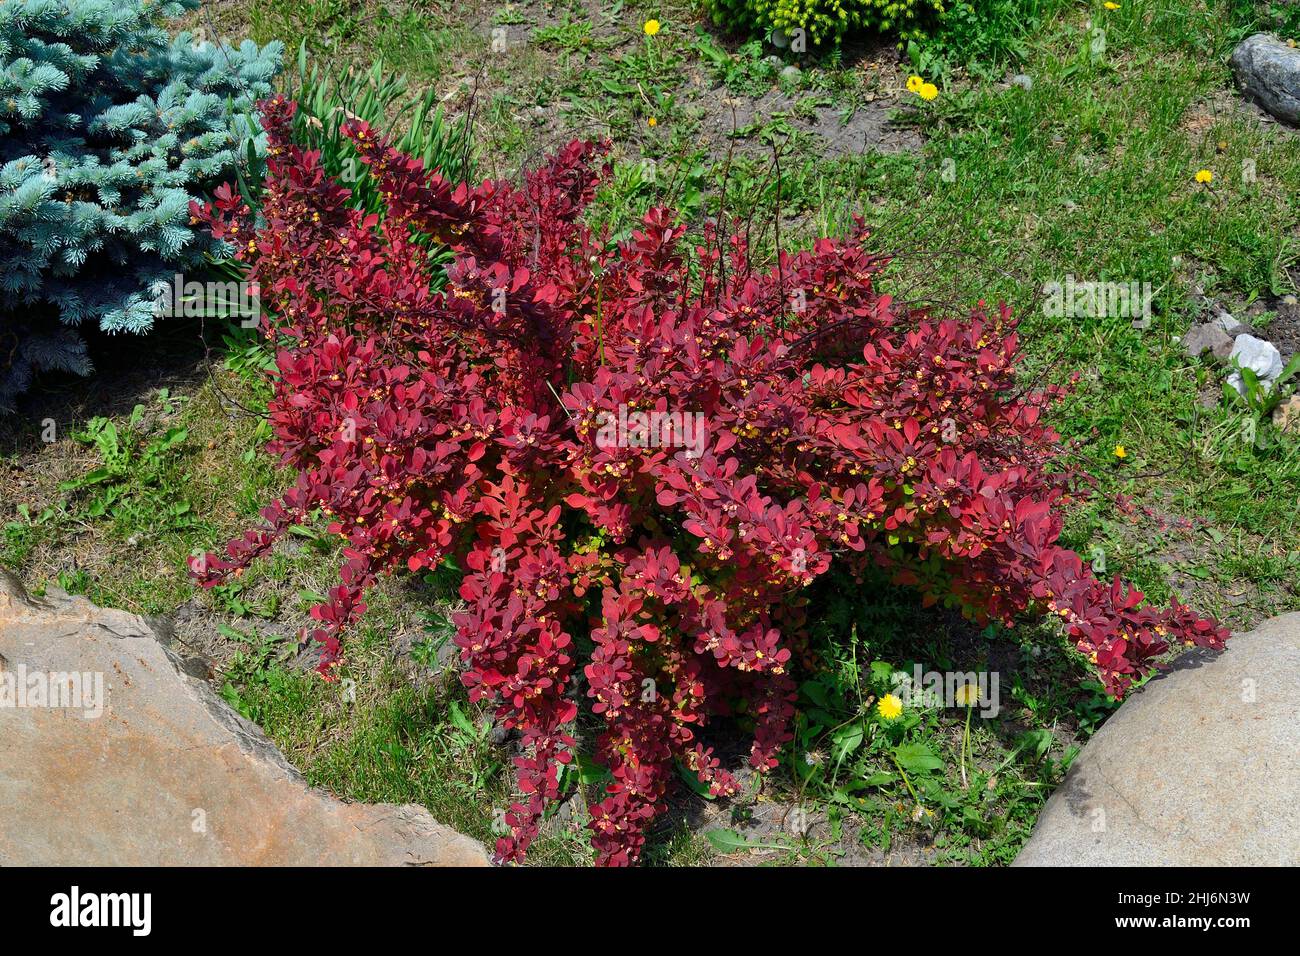 Berberberis thunbergii, variedad Moqueta roja con follaje rojo brillante y flores amarillas en el jardín de primavera entre piedras. Decorativa l Foto de stock